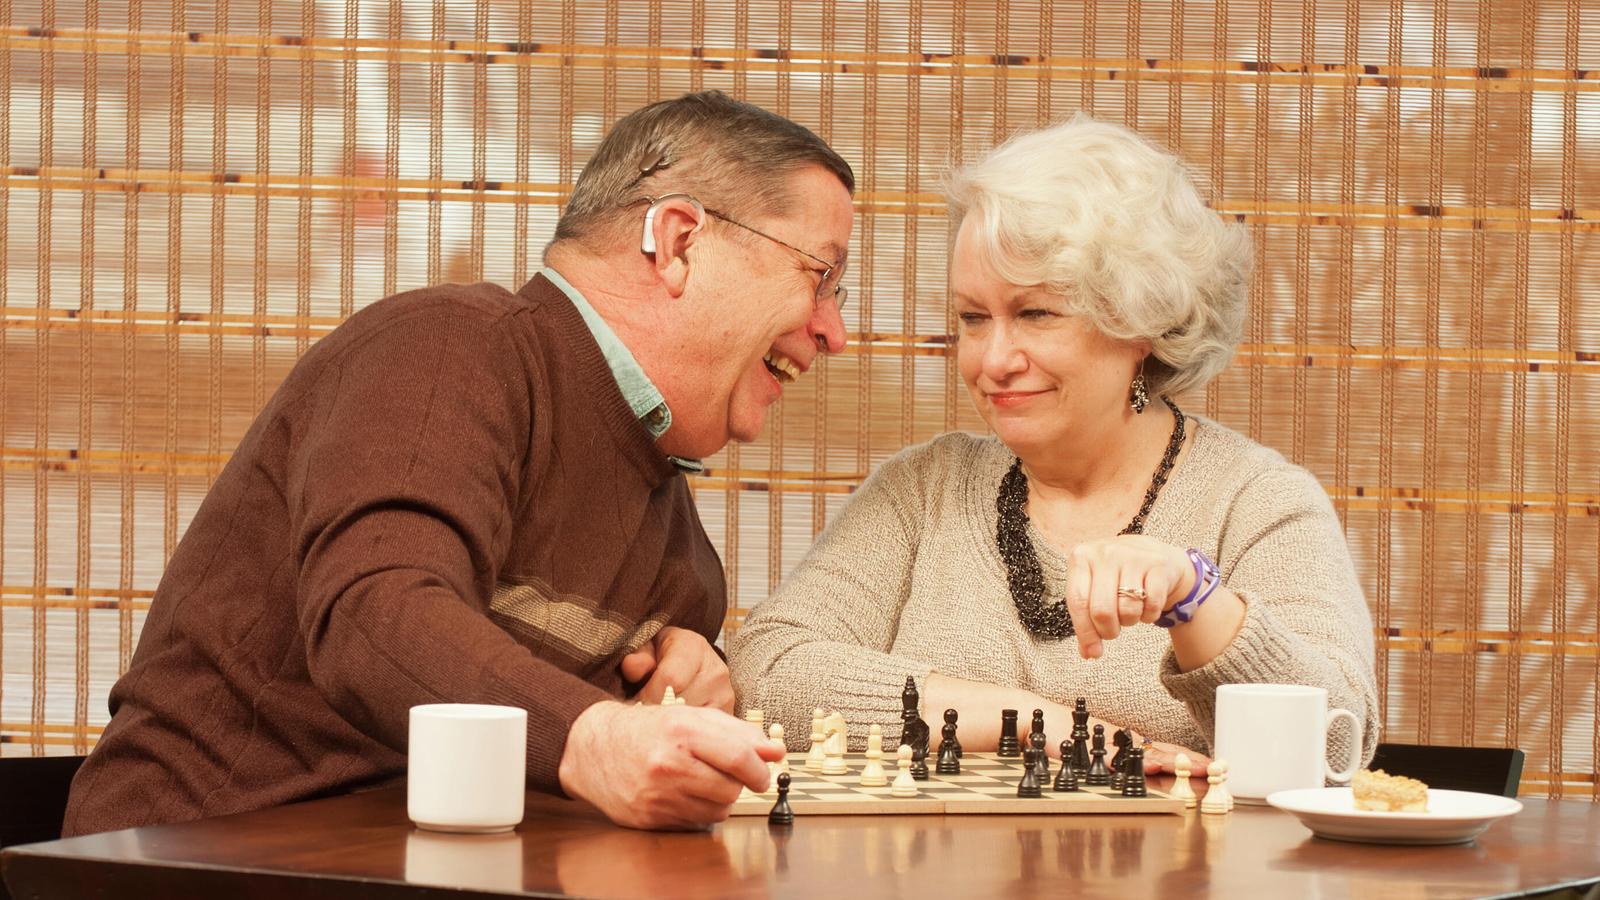 Пользователь Билл и его жена Пэм играют в шахматы